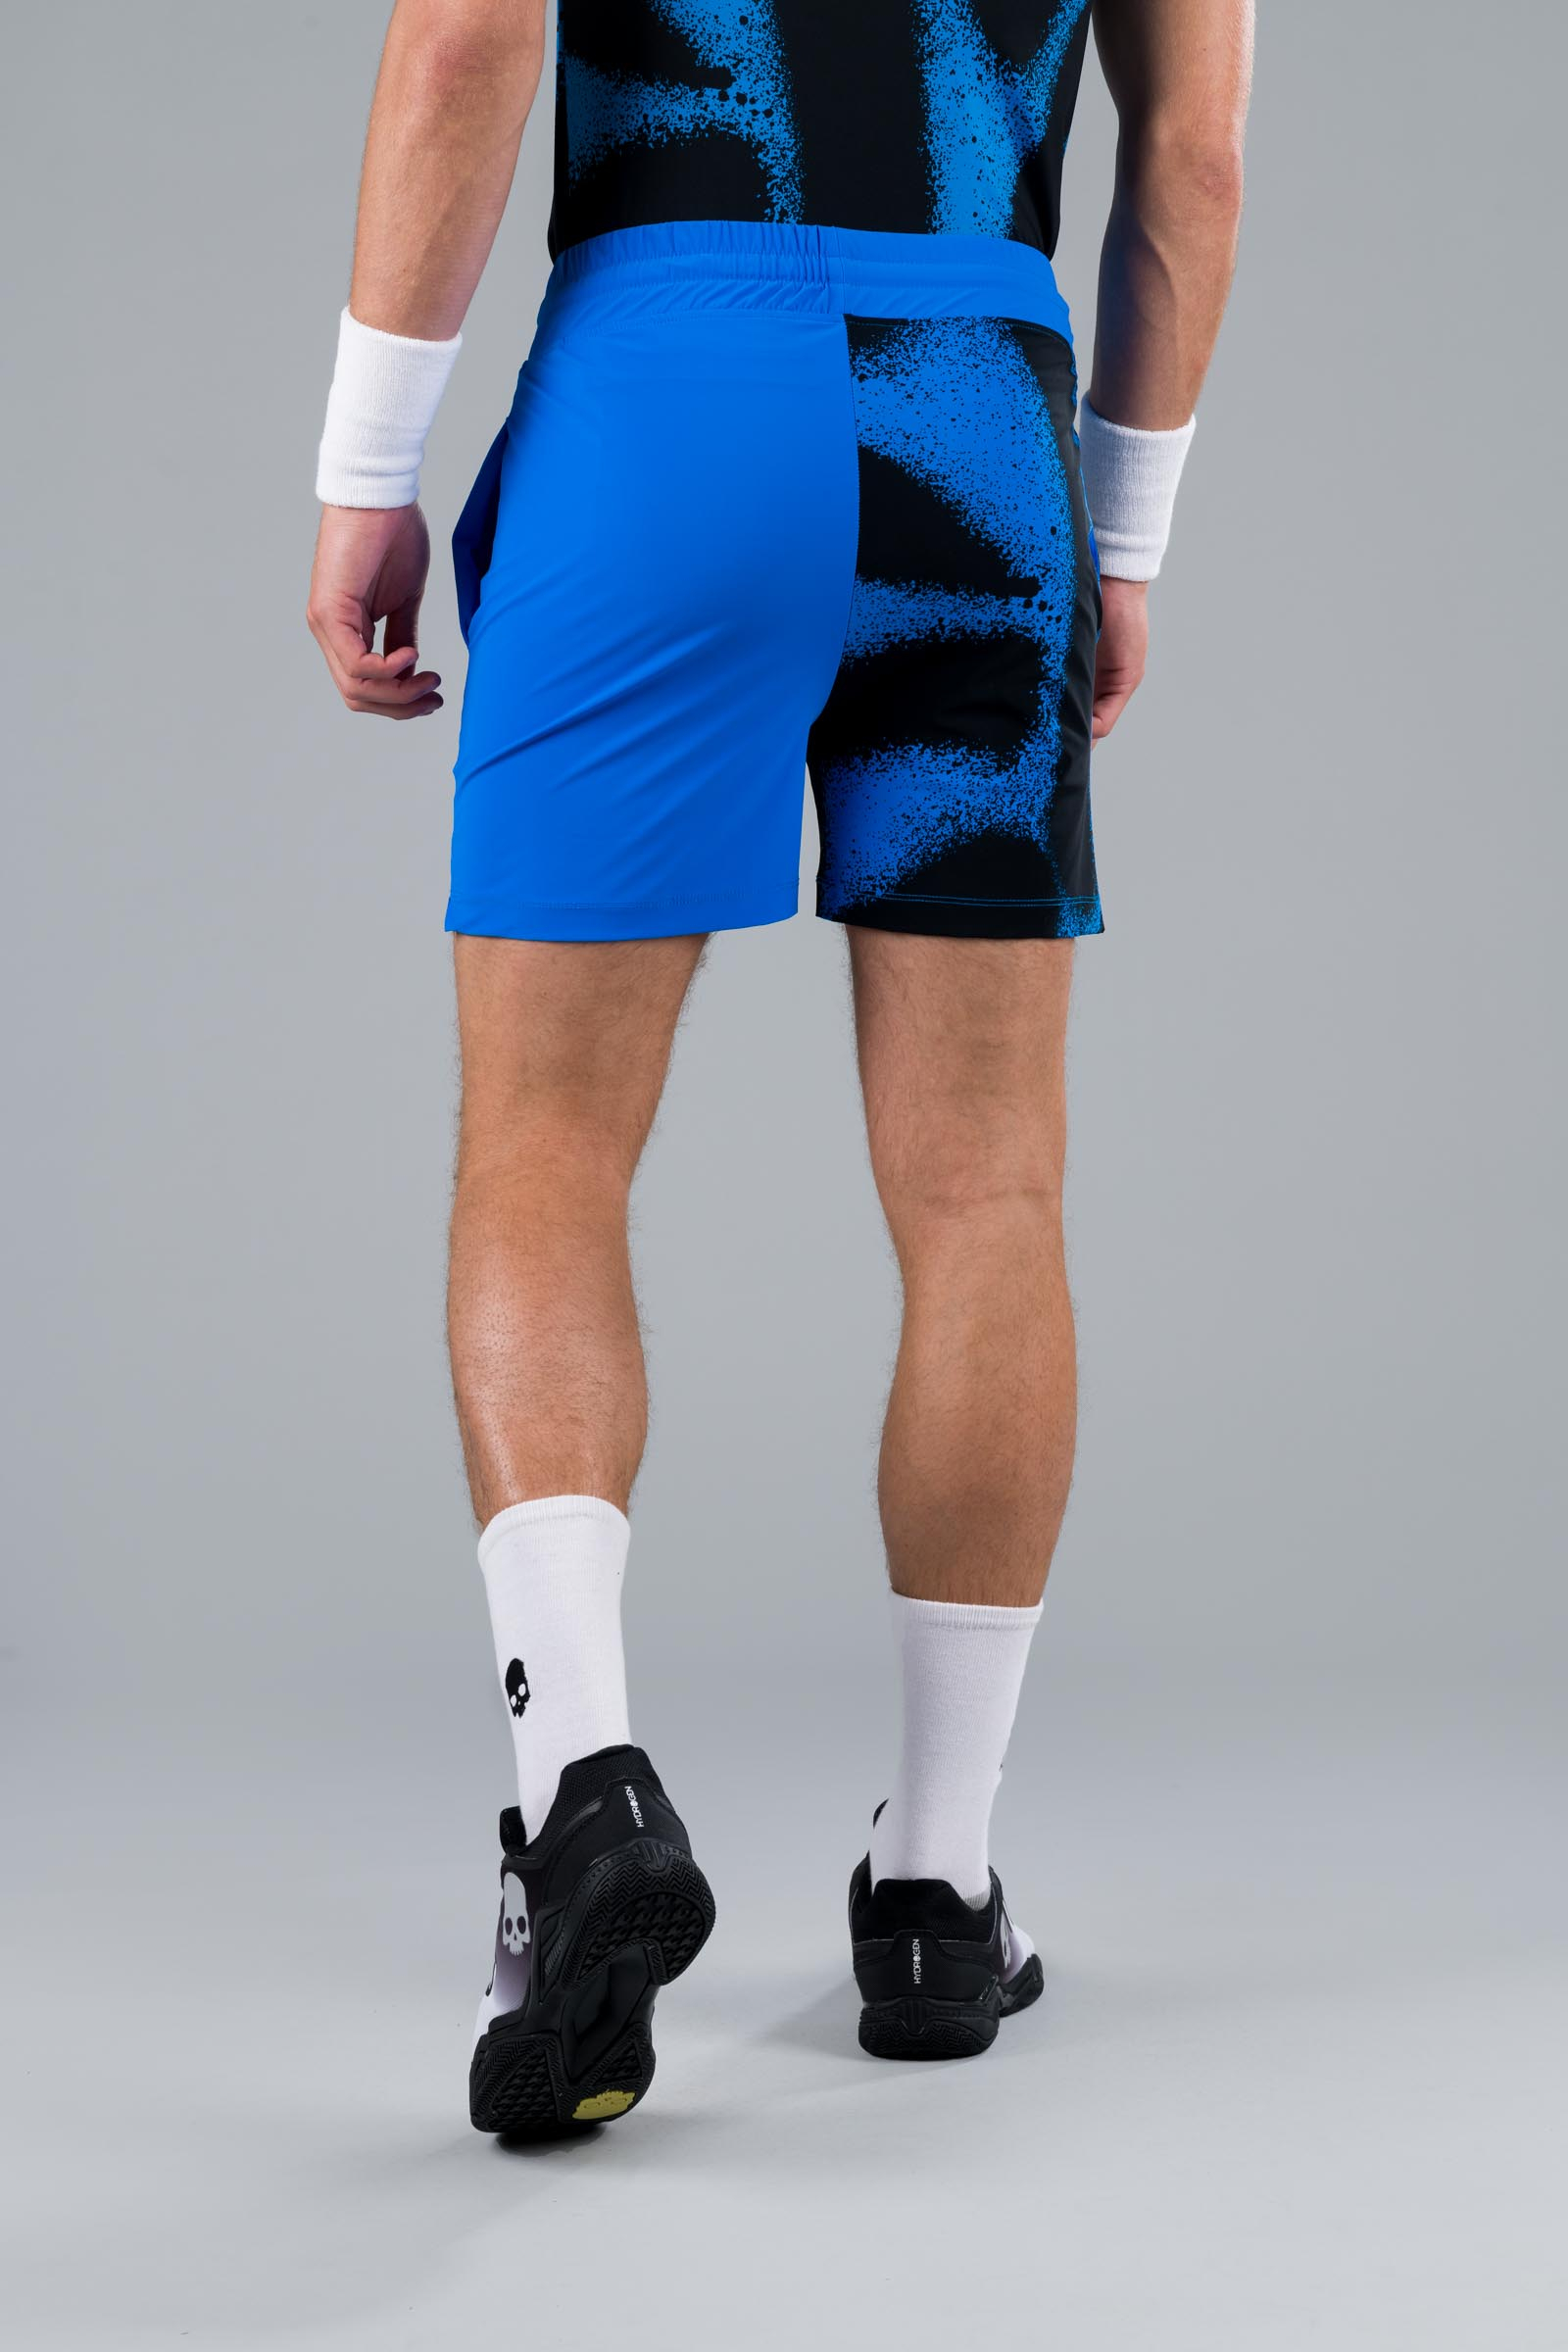 SPRAY TECH SHORTS - BLUETTE - Abbigliamento sportivo | Hydrogen